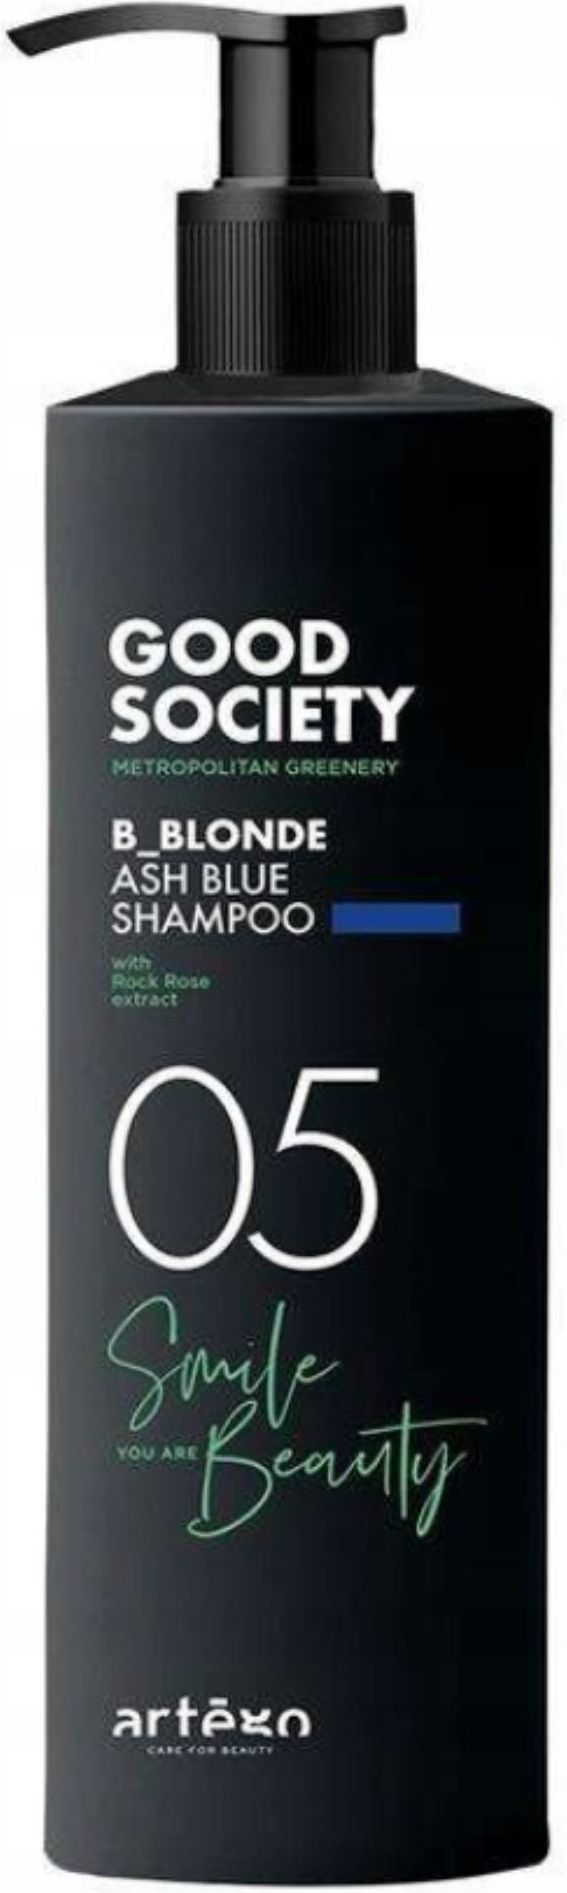 artego szampon niebieski